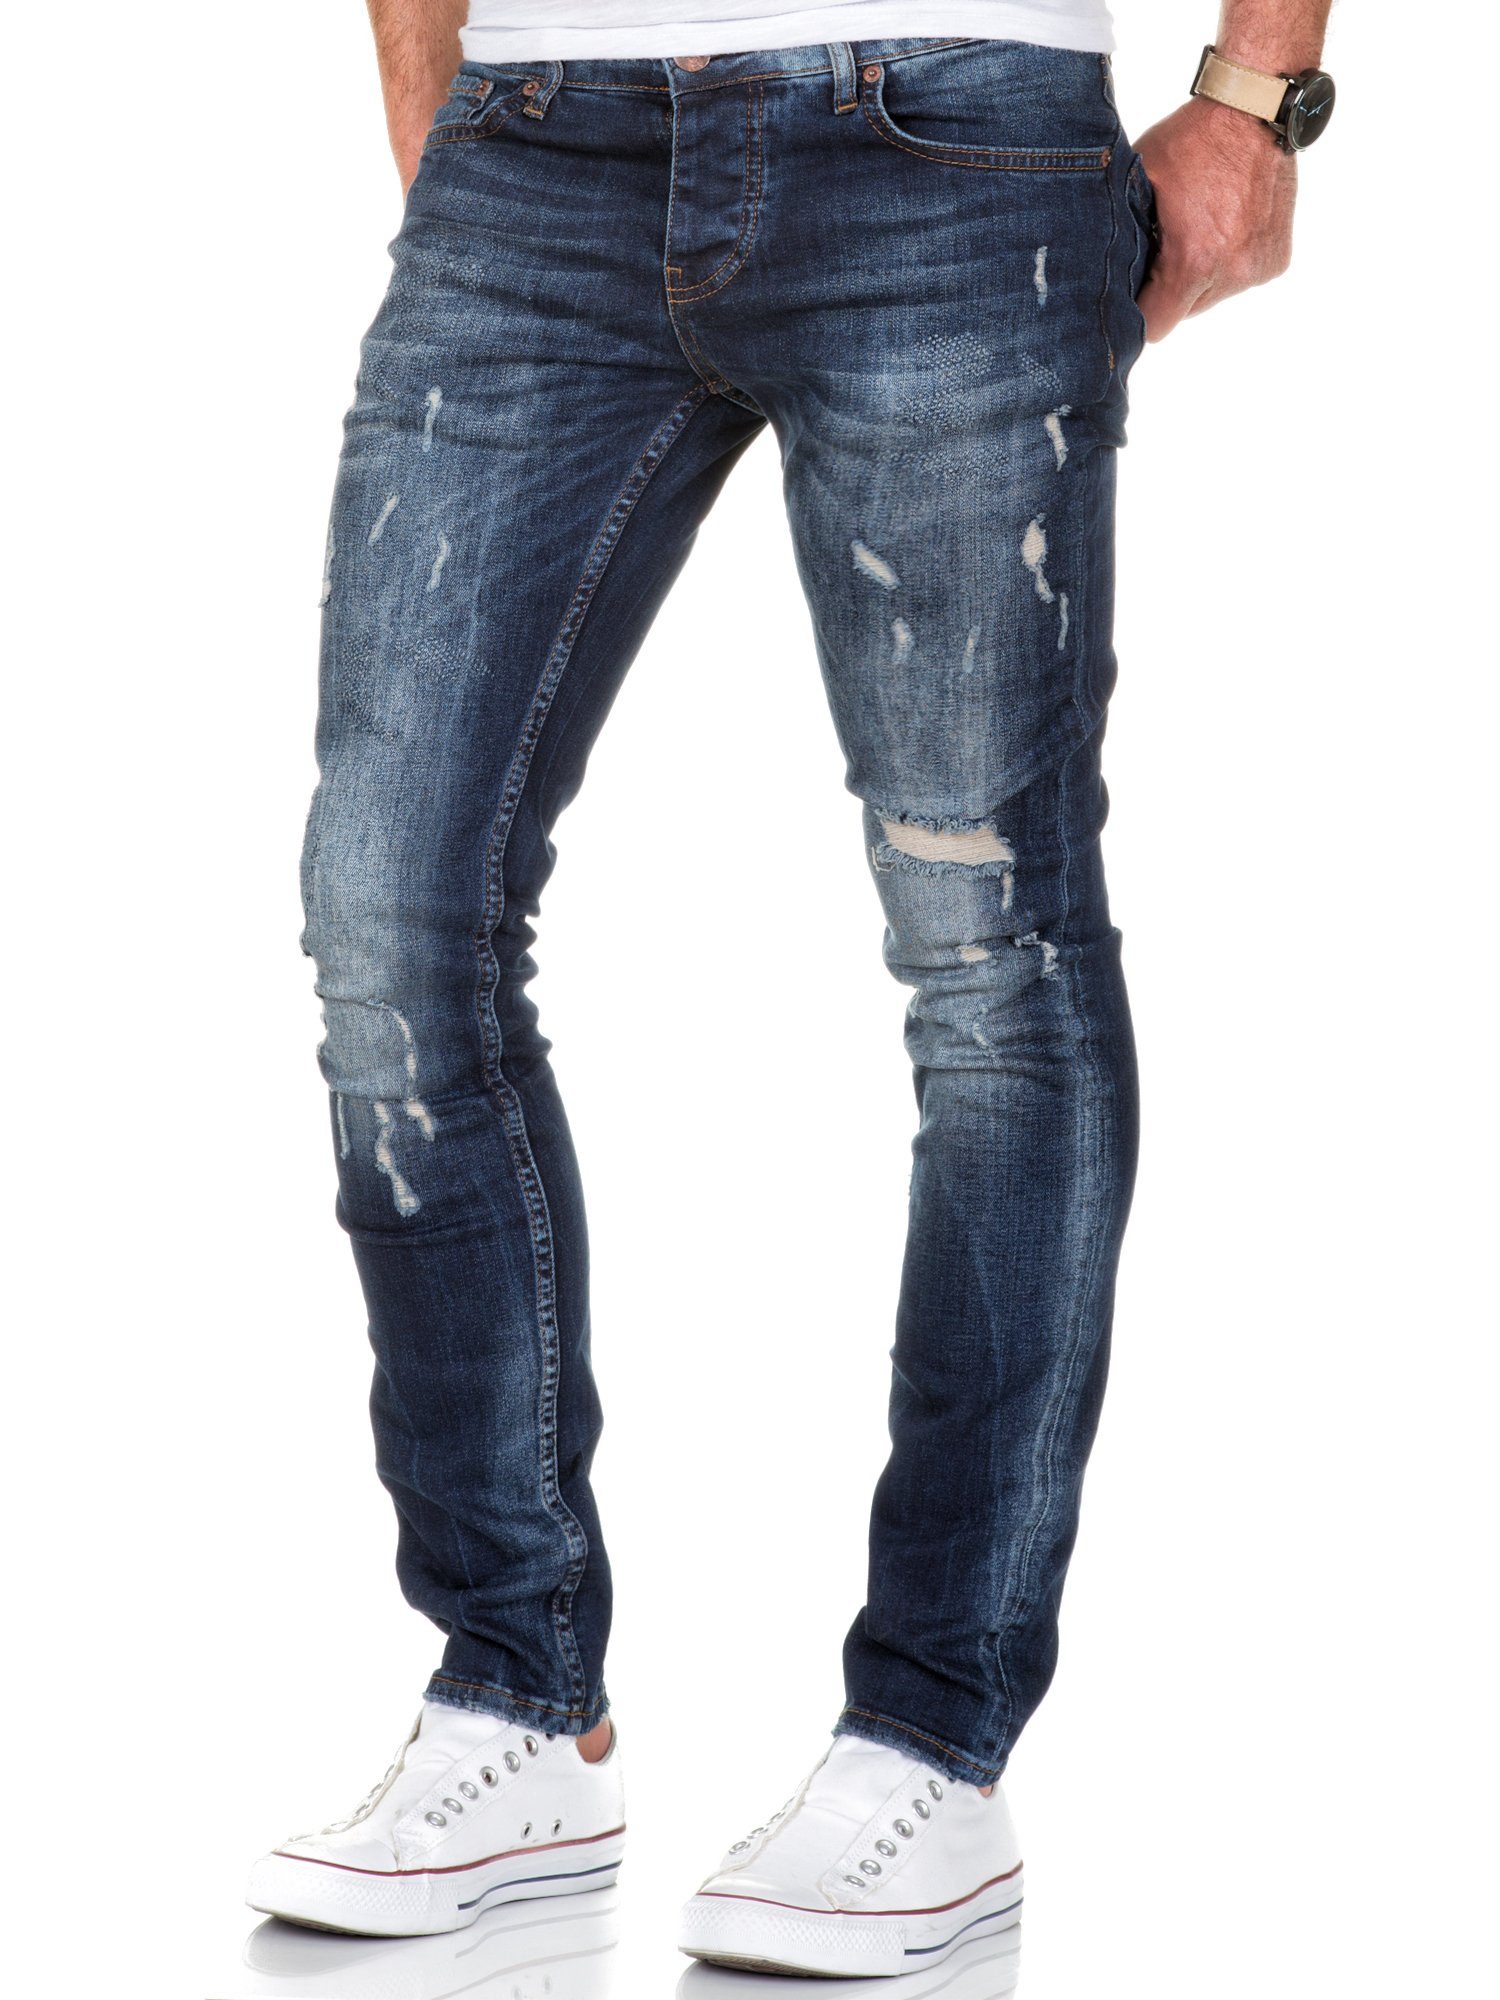 Amaci&Sons Slim-fit-Jeans FRESNO Slim Jeans Hose Destroyed Basic Fit Destroyed Dunkelblau Slim Herren Denim Regular